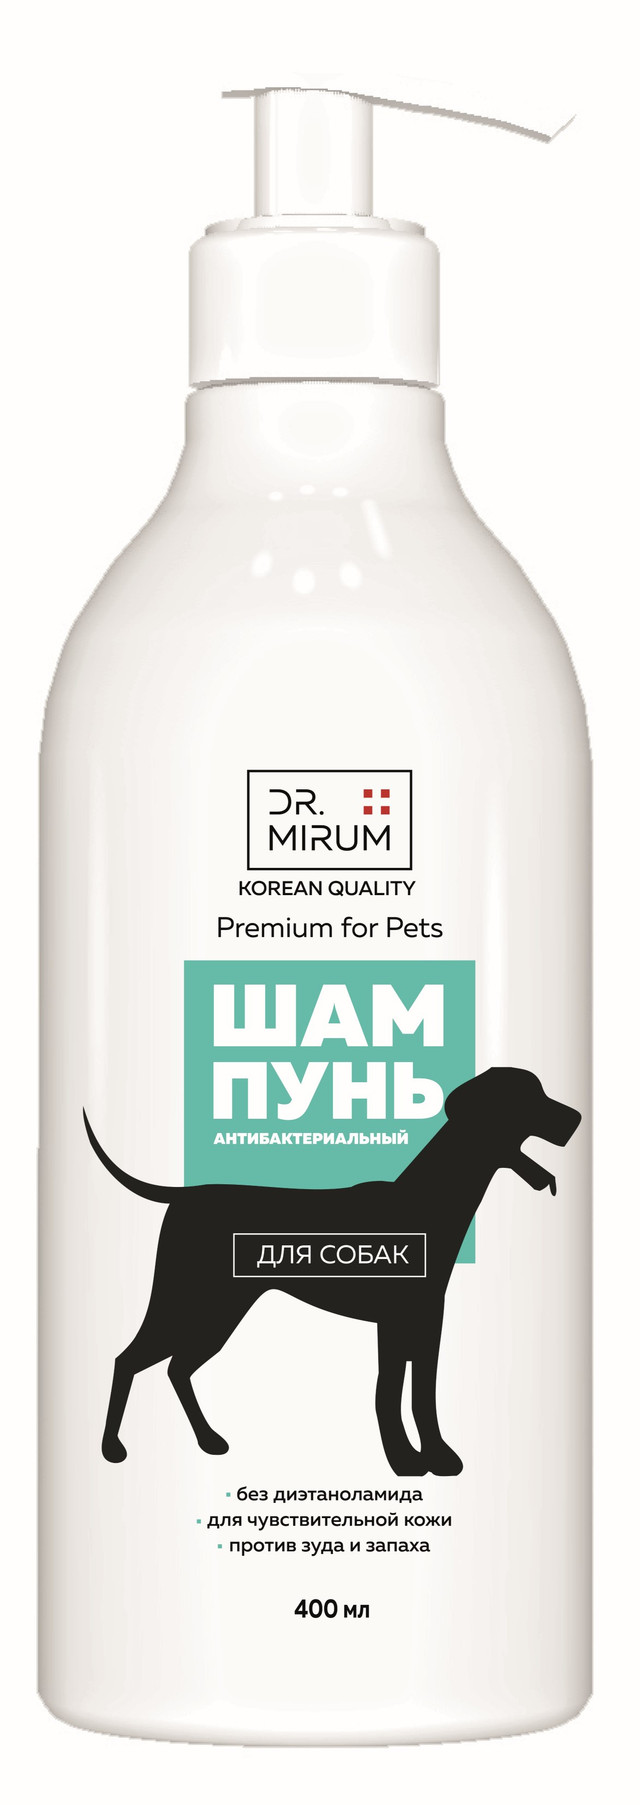 Шампунь для собак Dr. Mirum Premium For Pets антибактериальный с хлоргексидином, 400 мл